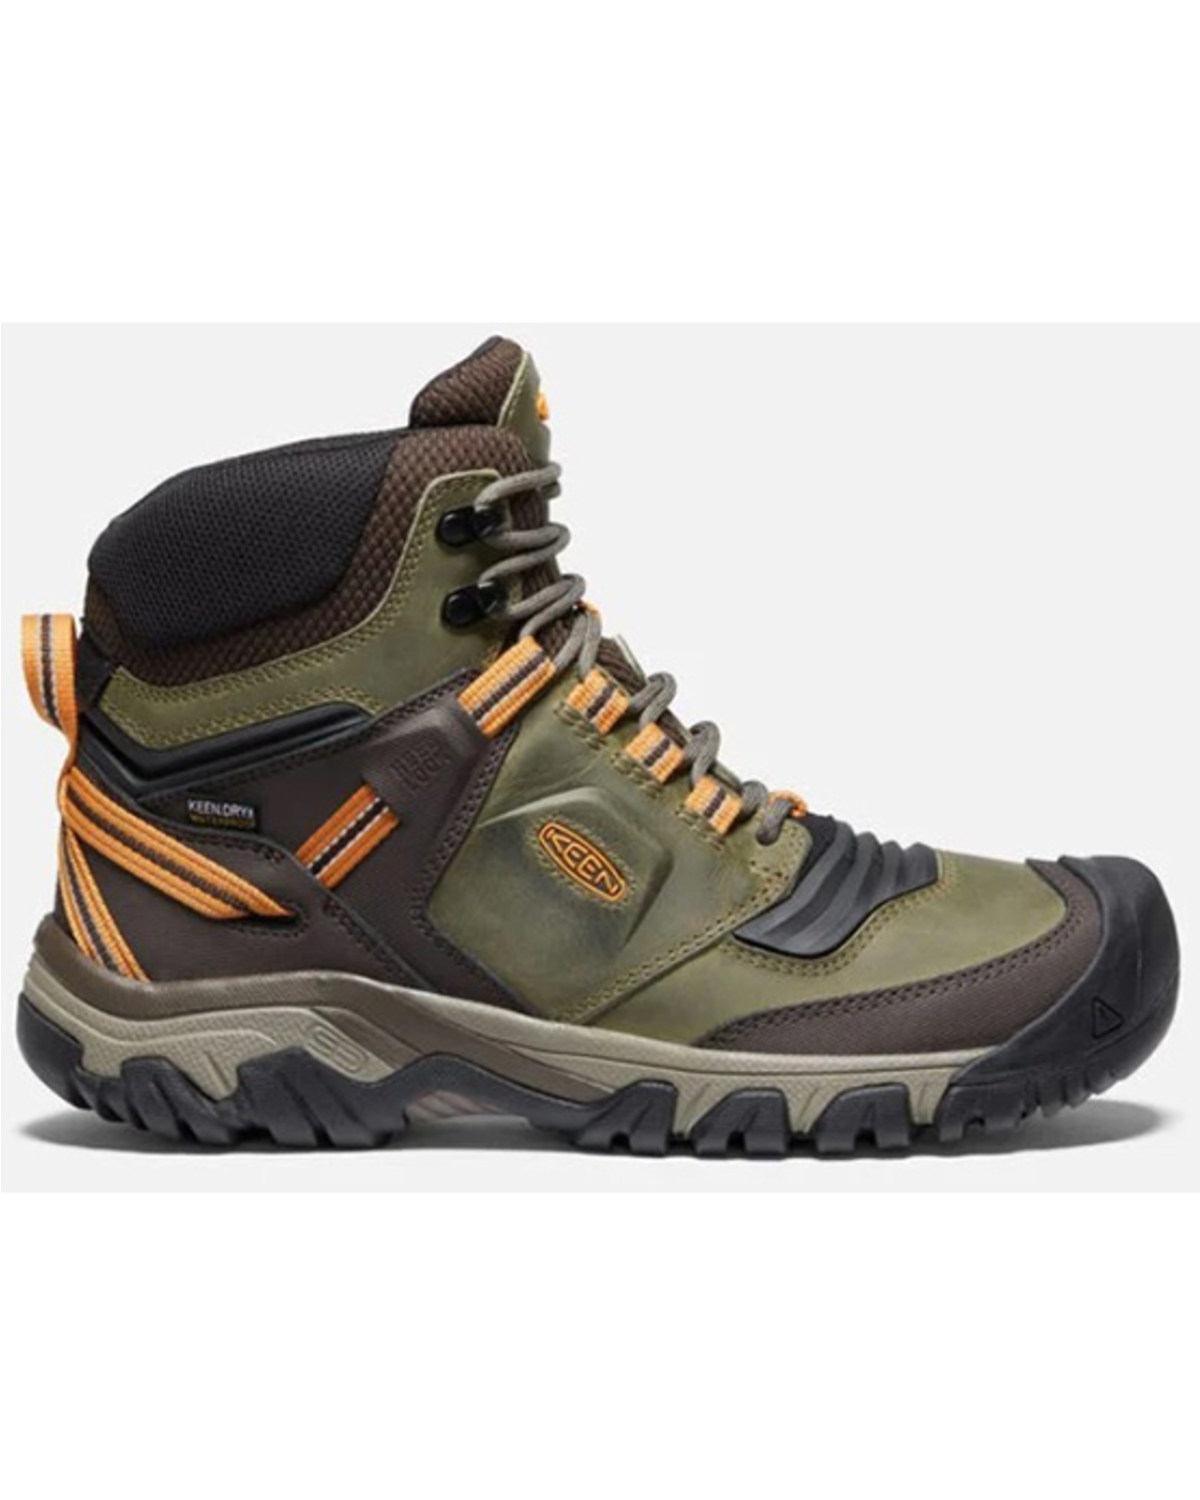 Keen Men's Ridge Flex Waterproof Boots